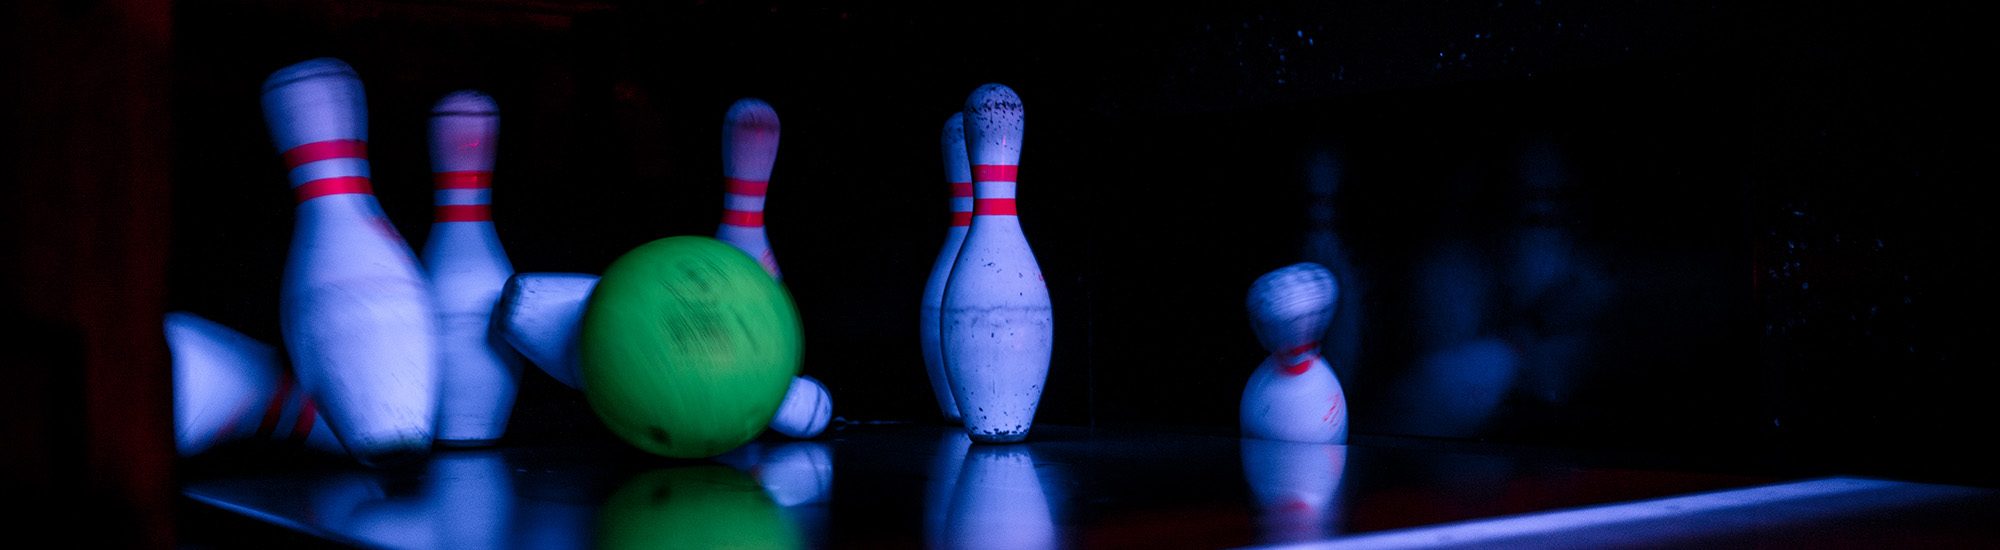 la-bowling-landshut-04